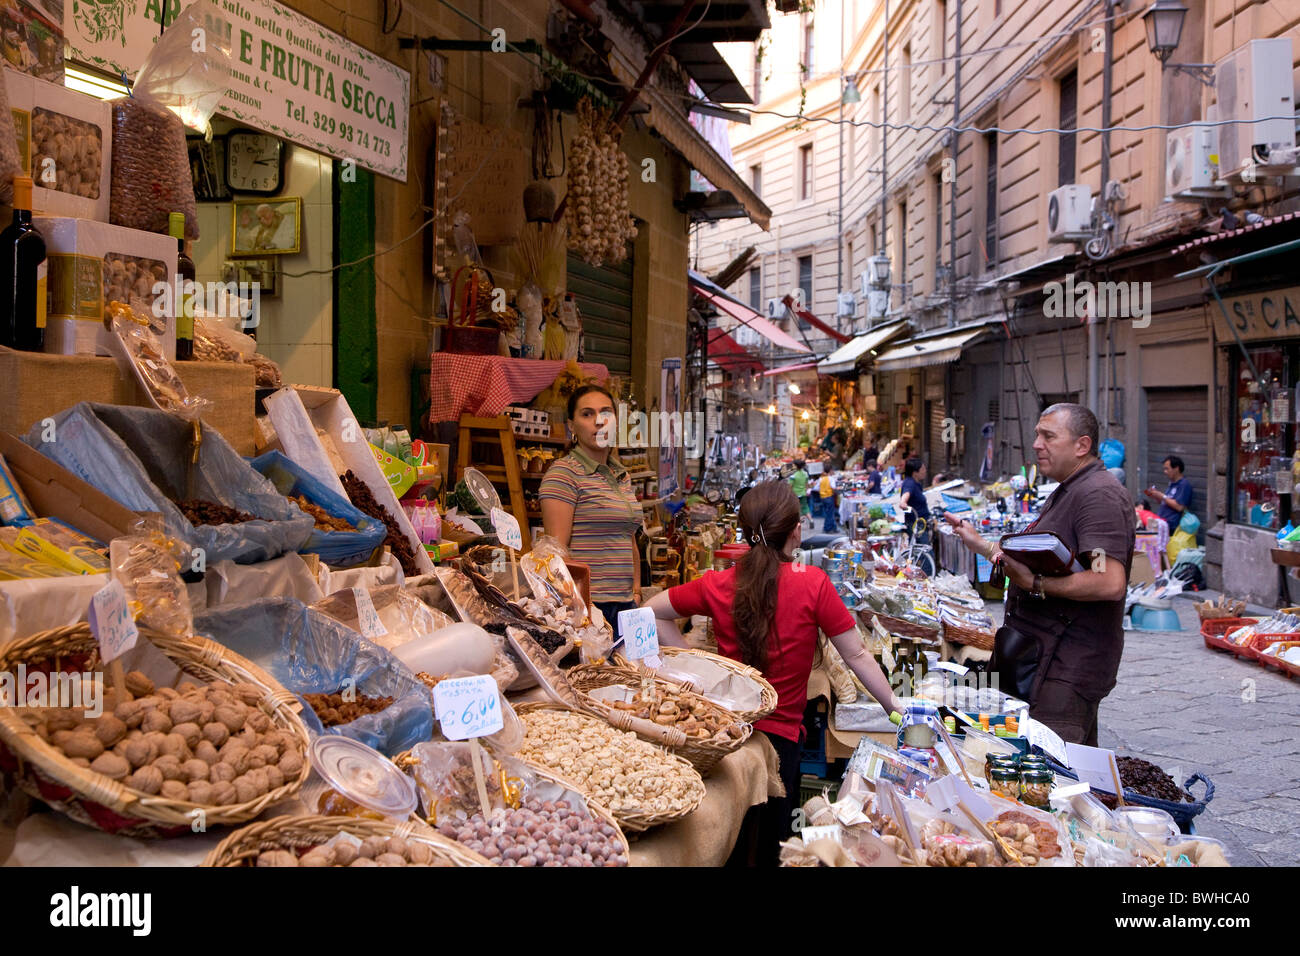 Mercato di Capo, di mercato per i prodotti alimentari e tessili, Palermo, Sicilia, Italia, Europa Foto Stock